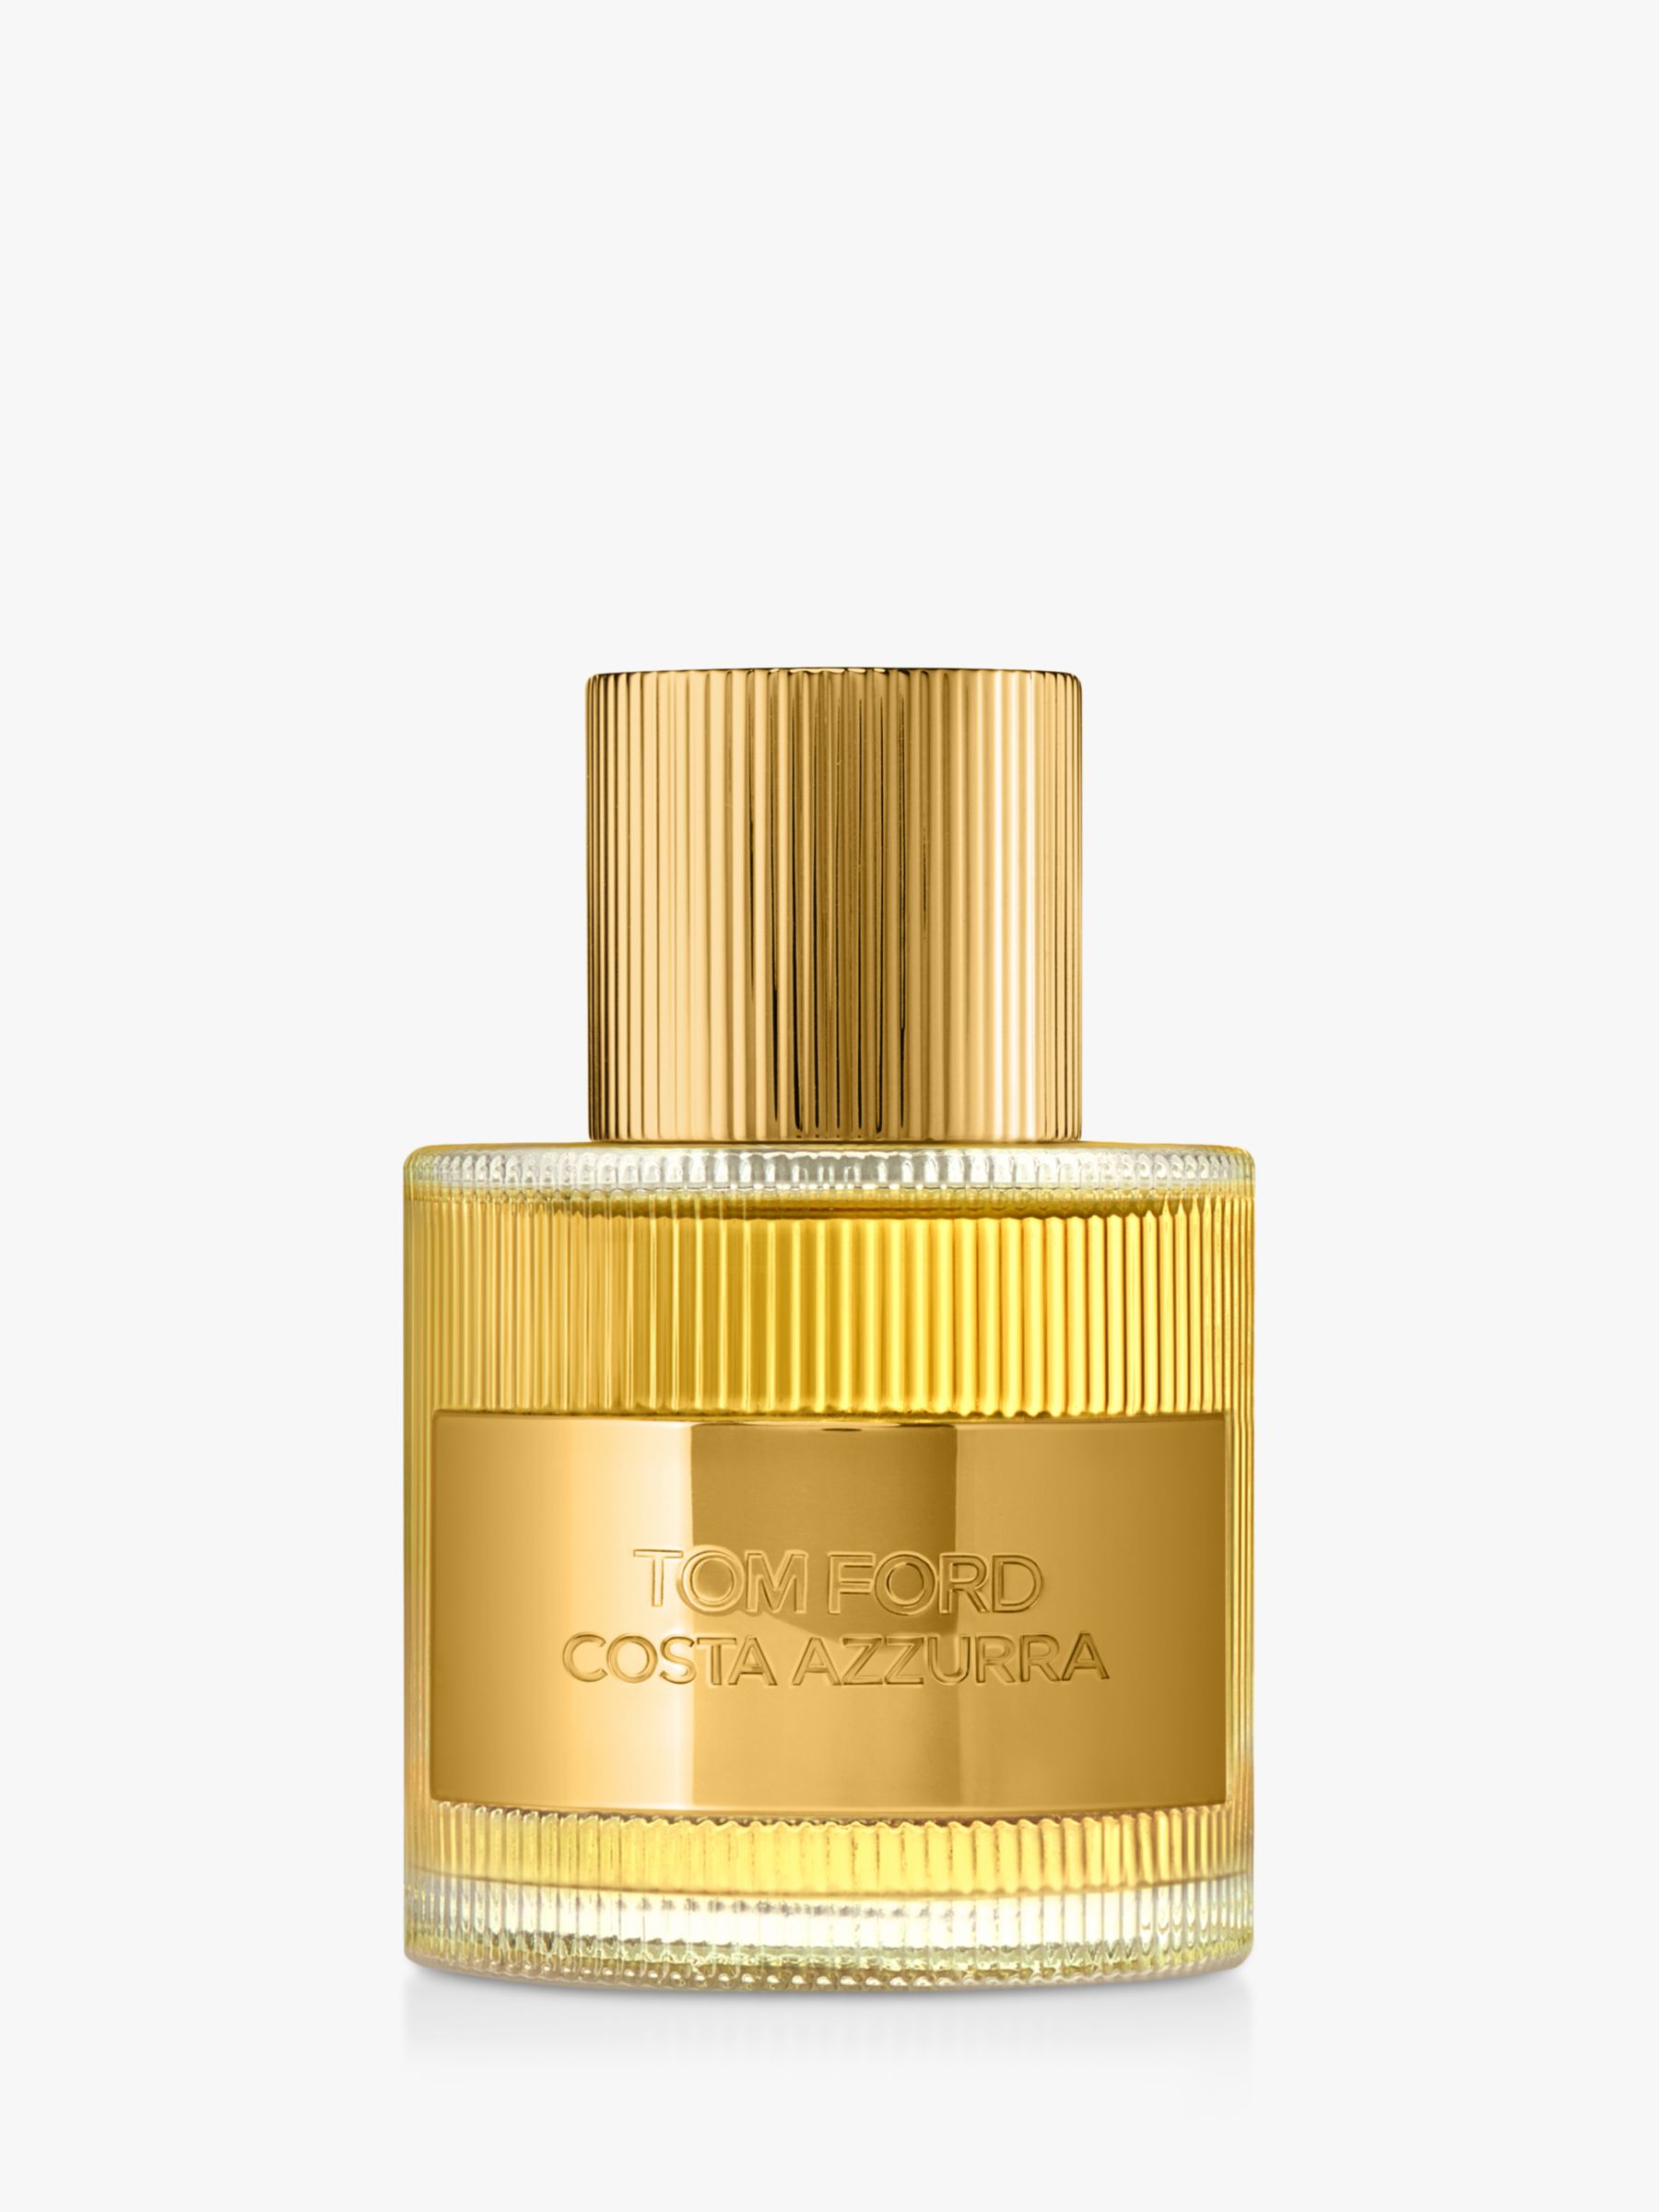 TOM FORD Costa Azzurra Eau de Parfum, 50ml at John Lewis & Partners